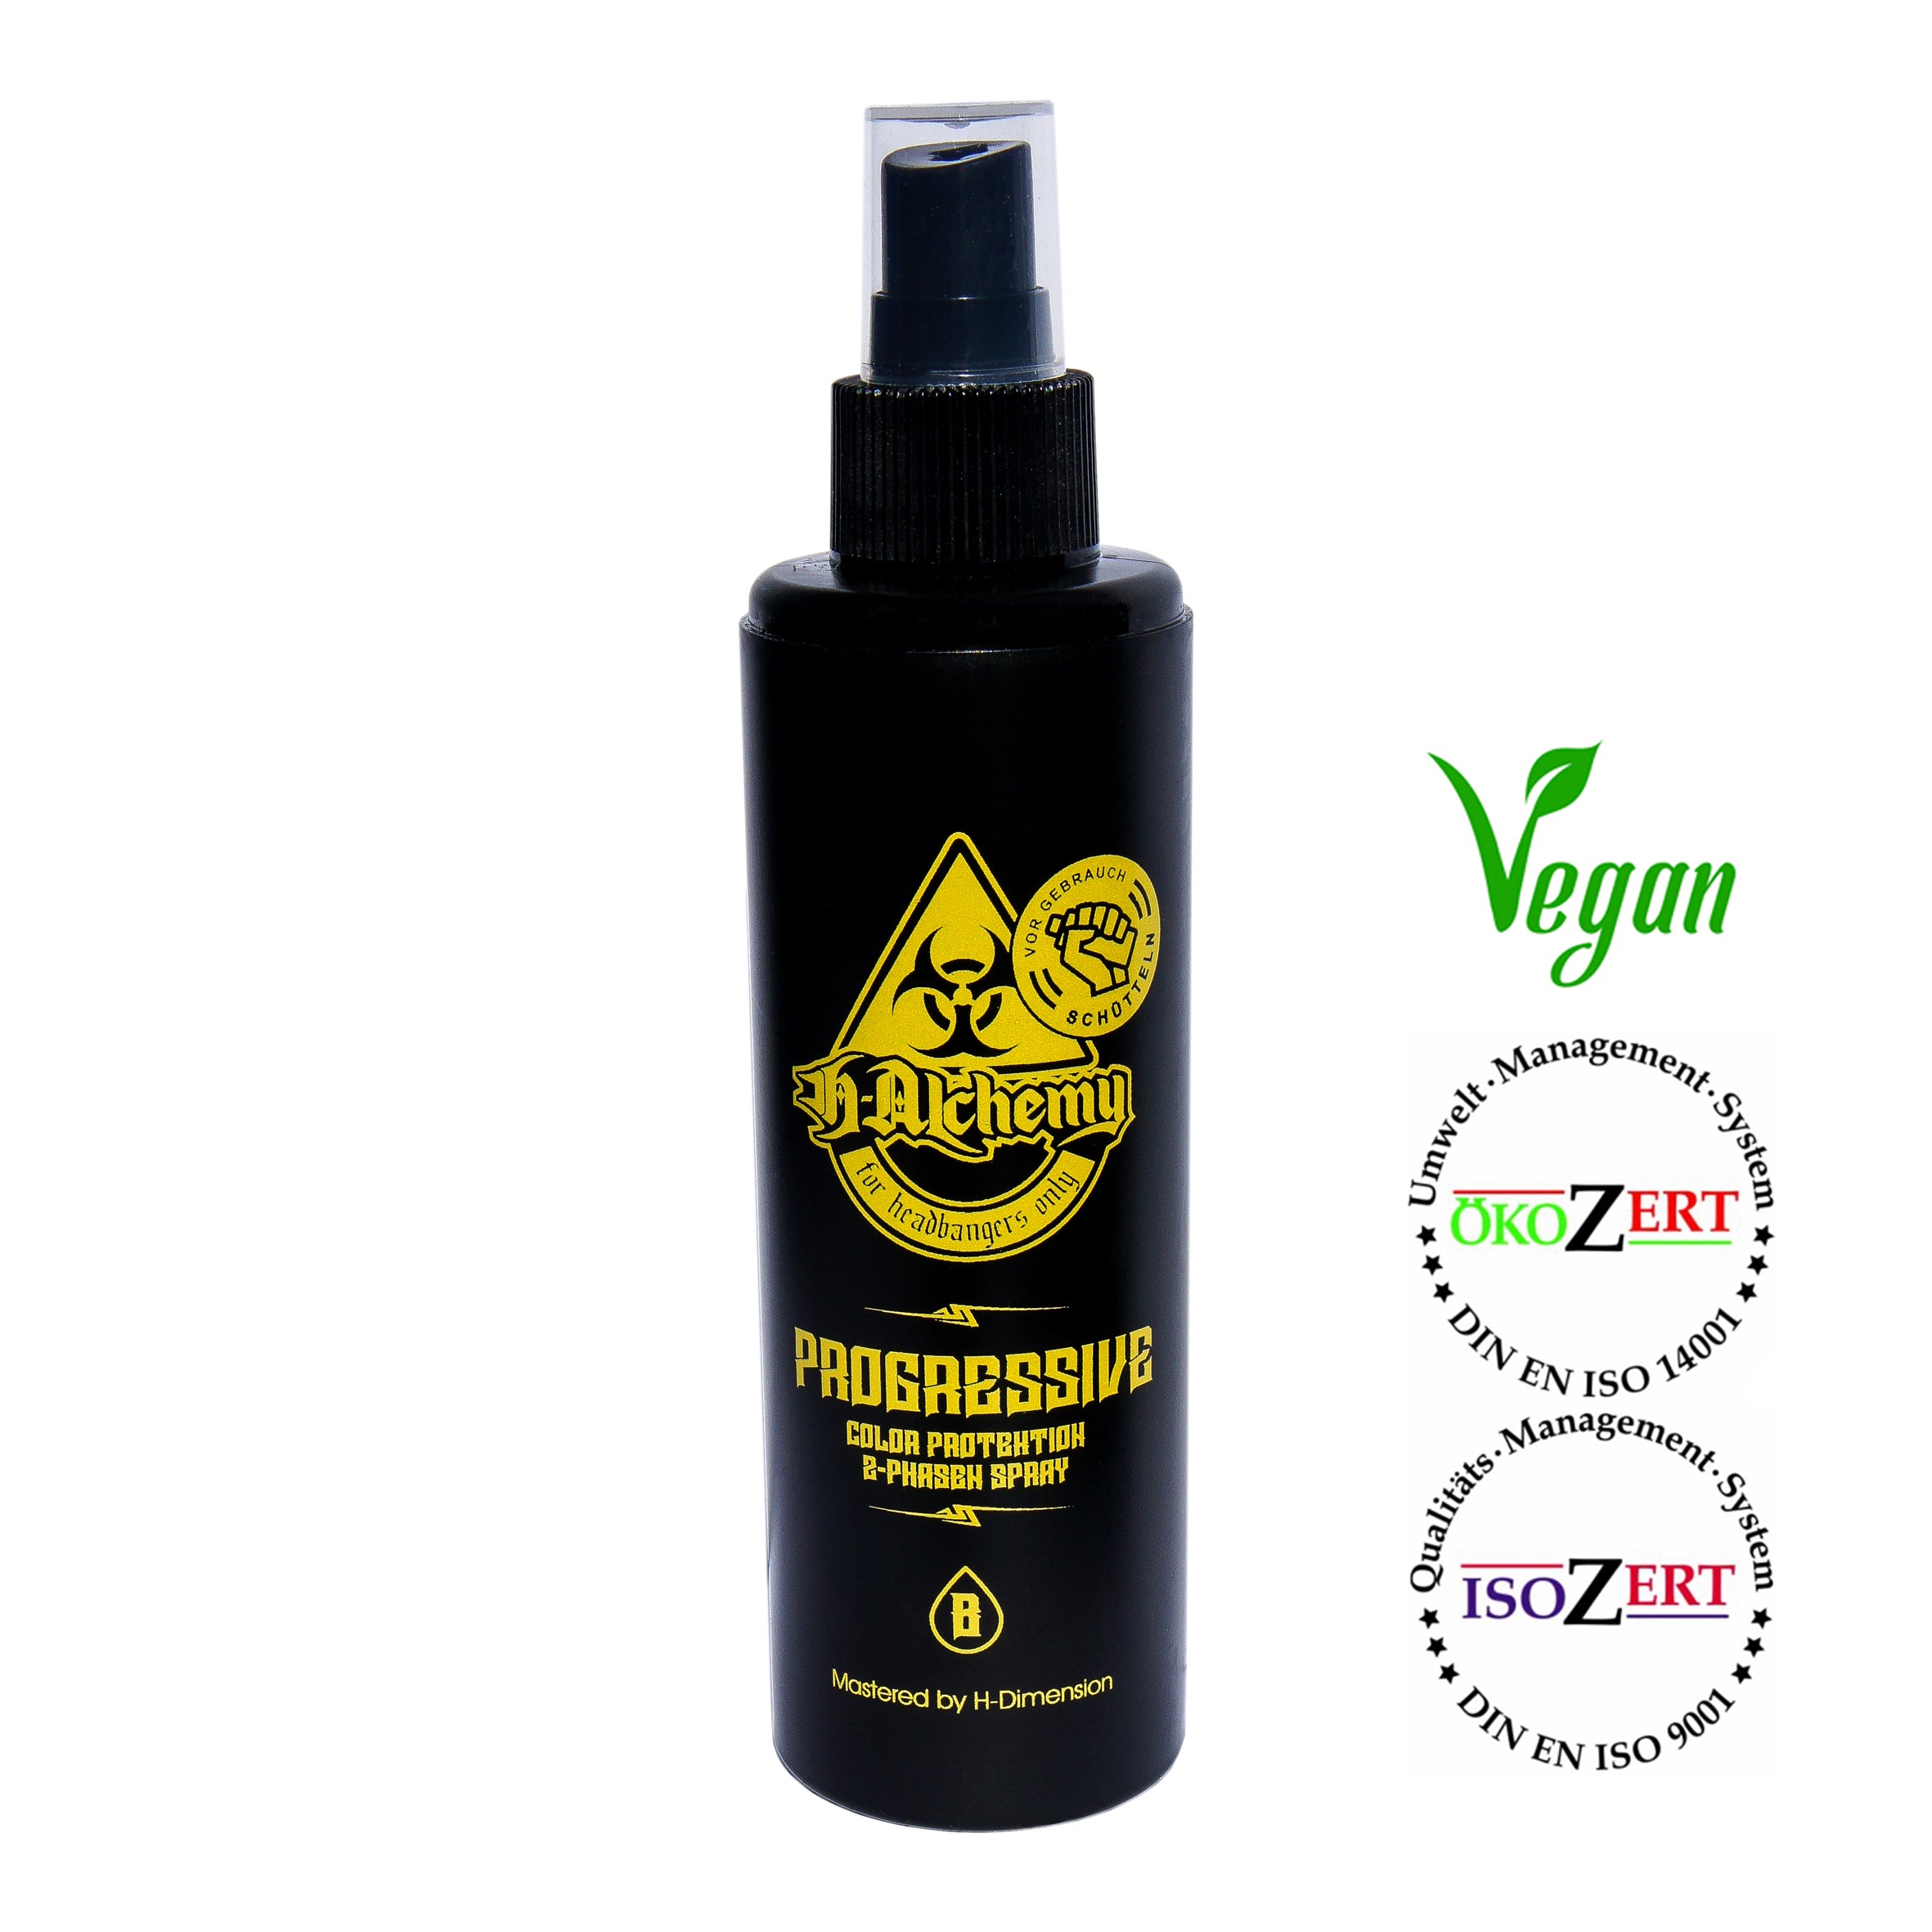 Progressive - Color Protektion - 2-Phasen Spray - 100% VEGAN H-Alchemy